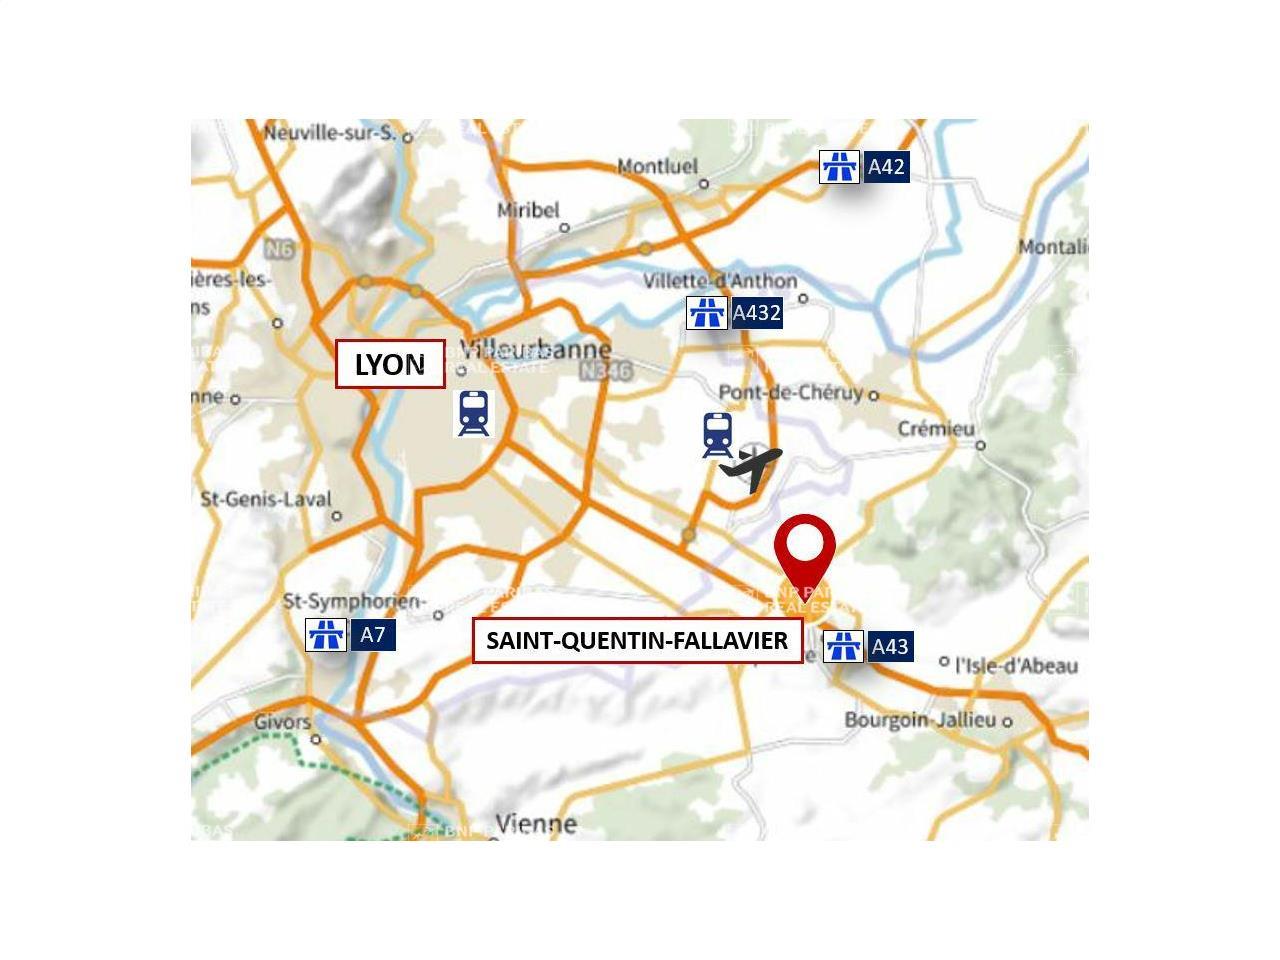 Location entrepôt classe a 17912m² Saint-Quentin-Fallavier